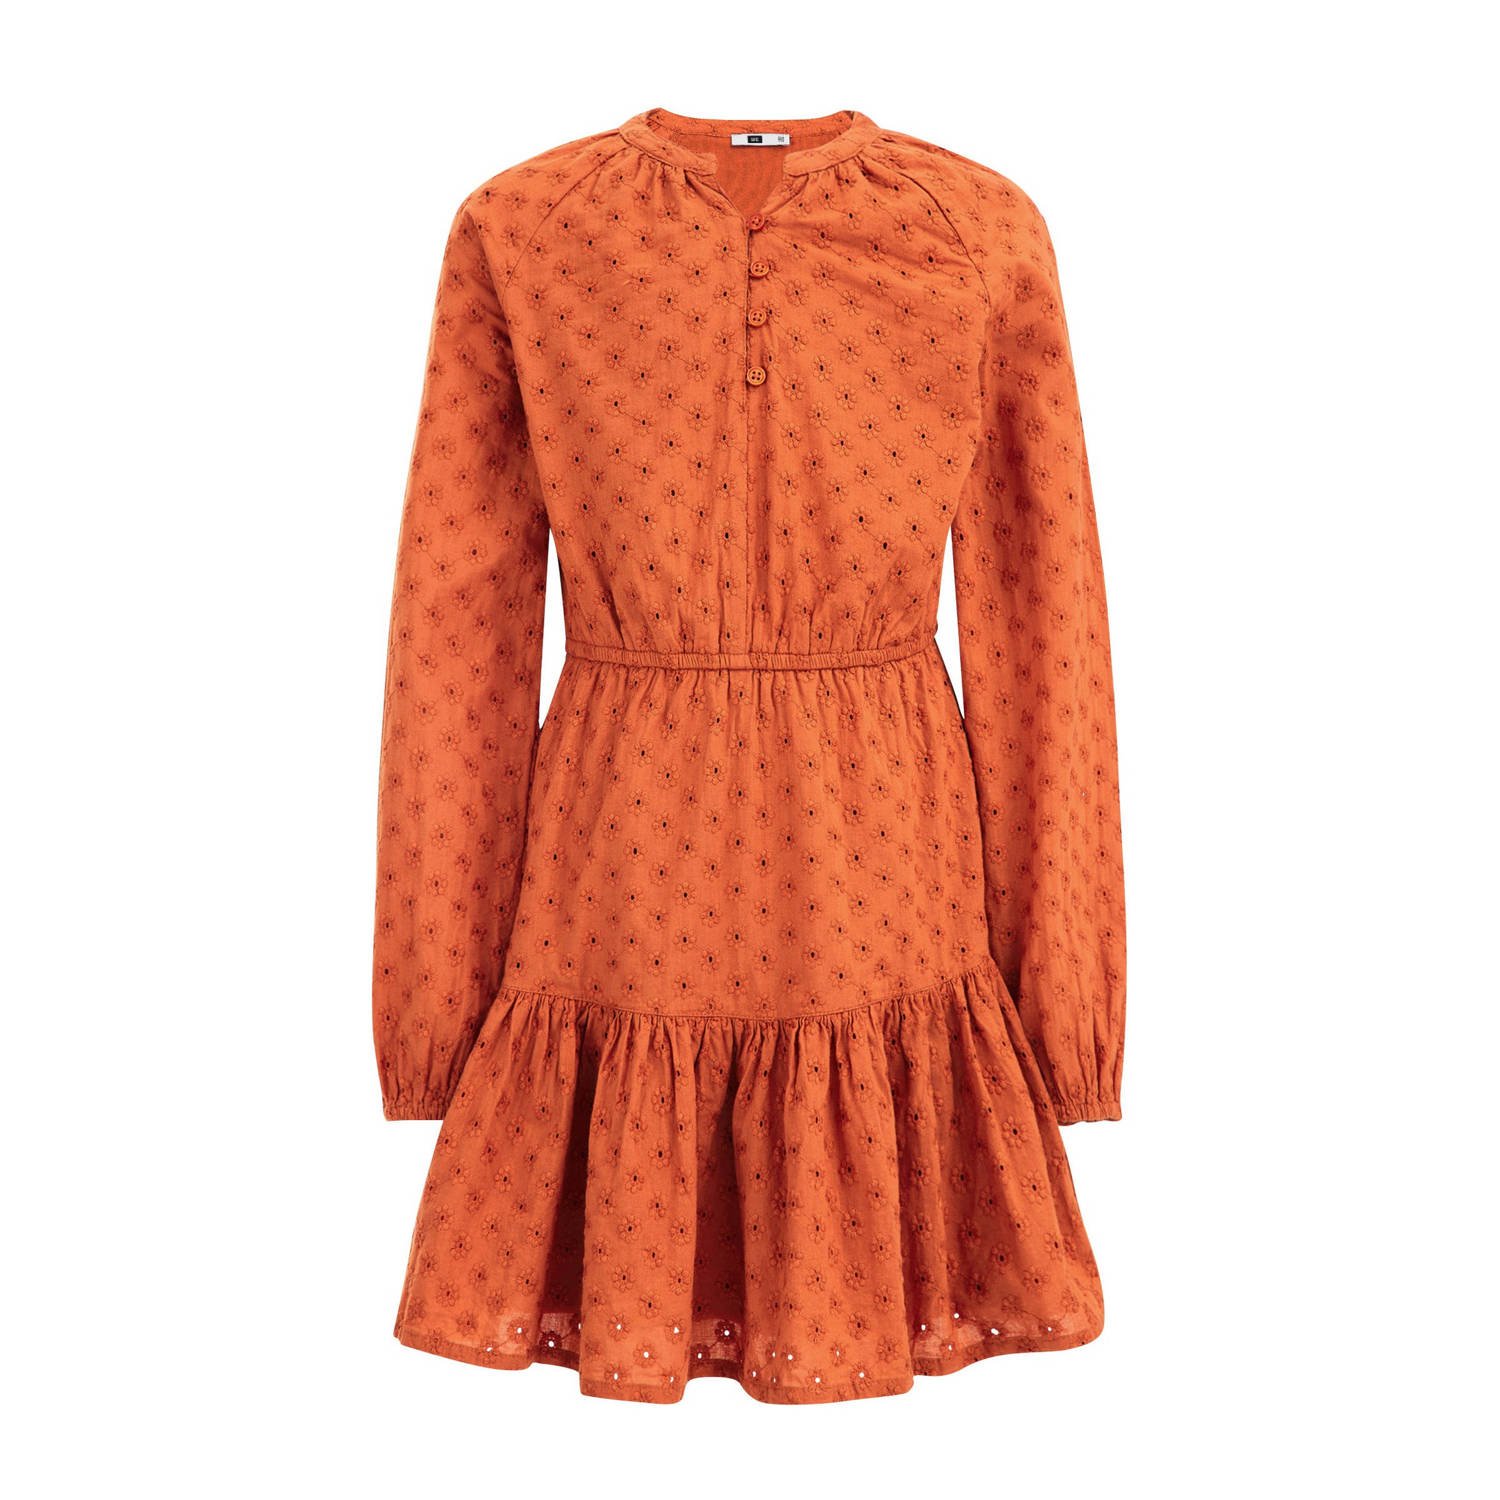 WE Fashion gebloemde jurk oranje bruin Meisjes Katoen Ronde hals Bloemen 110 116